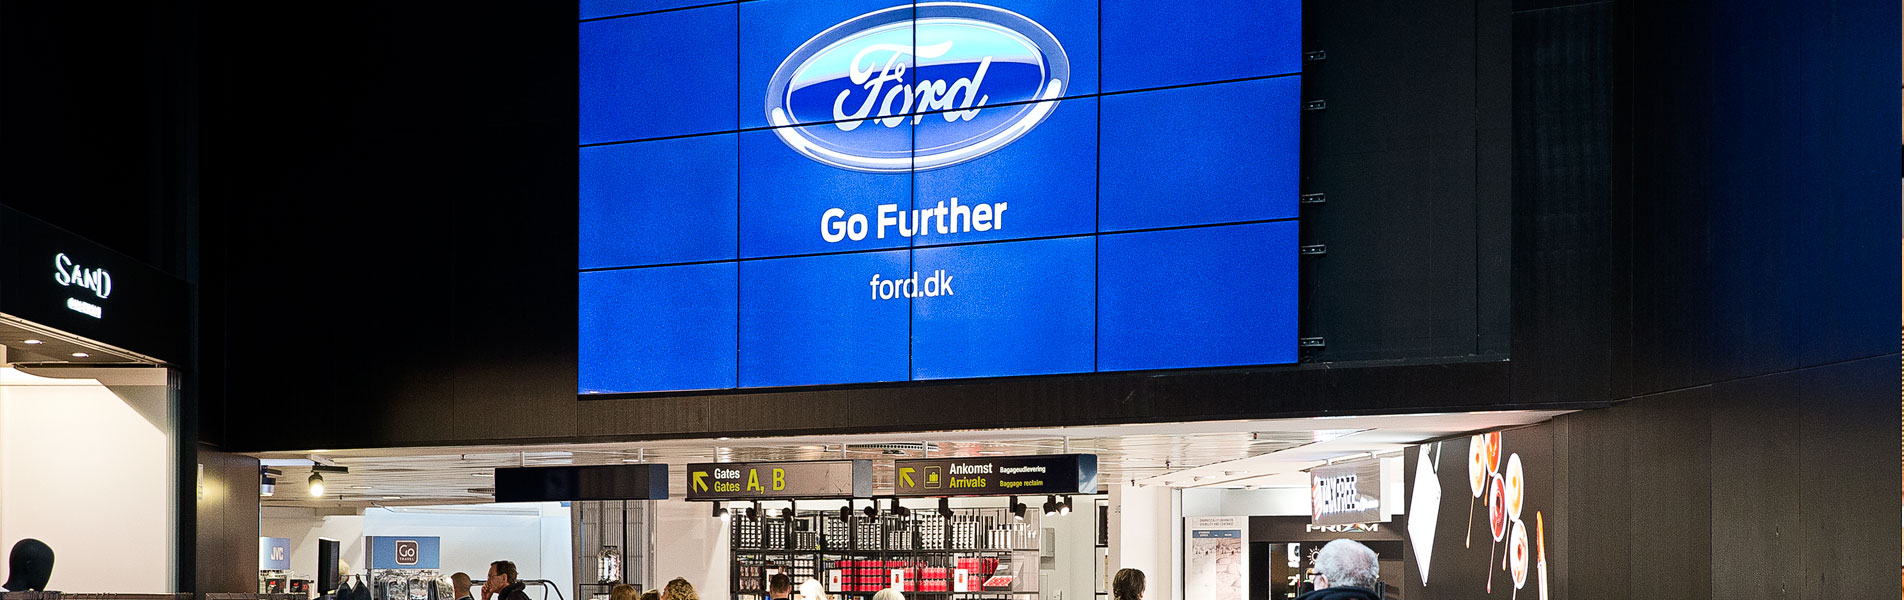 Overalt i Københavns lufthavn mødes de forbipasserende af imponerende og knivskarpe digitale skilte.